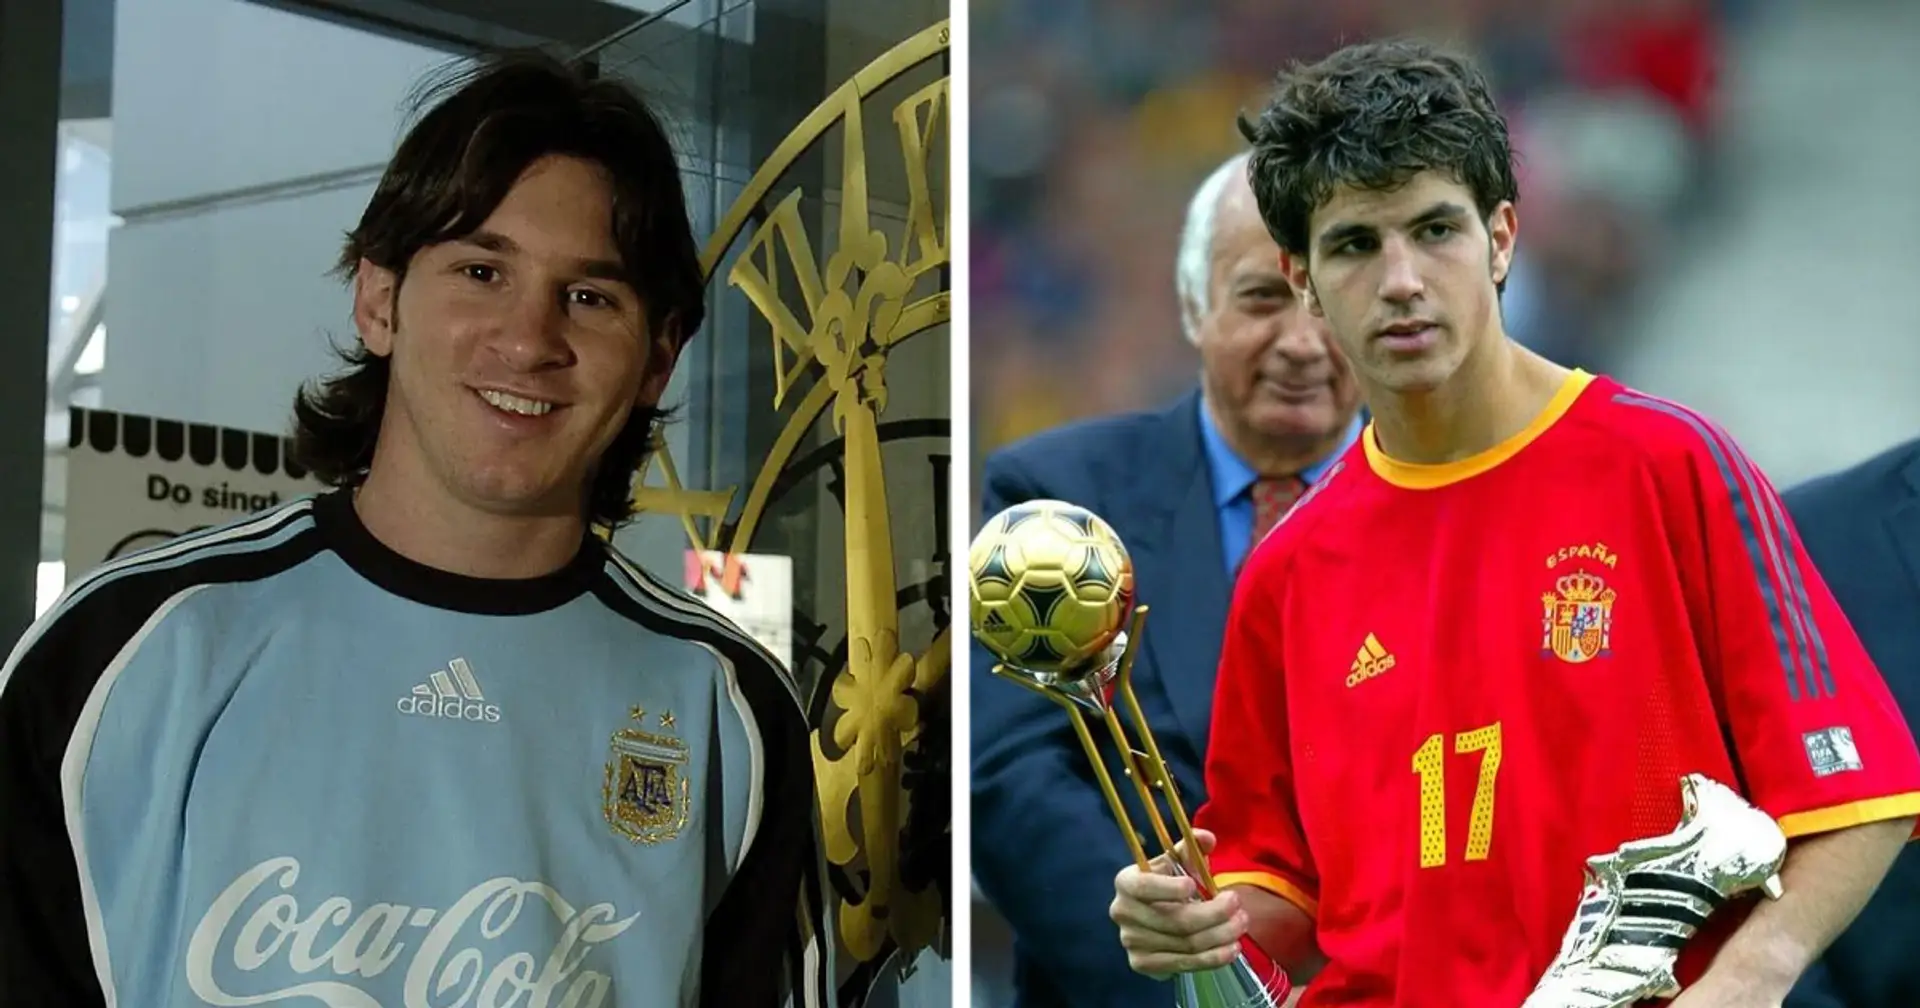 Wusstet ihr, dass Messi für die spanische Nationalmannschaft hätte spielen können? Cesc Fabregas stand ihm im Weg